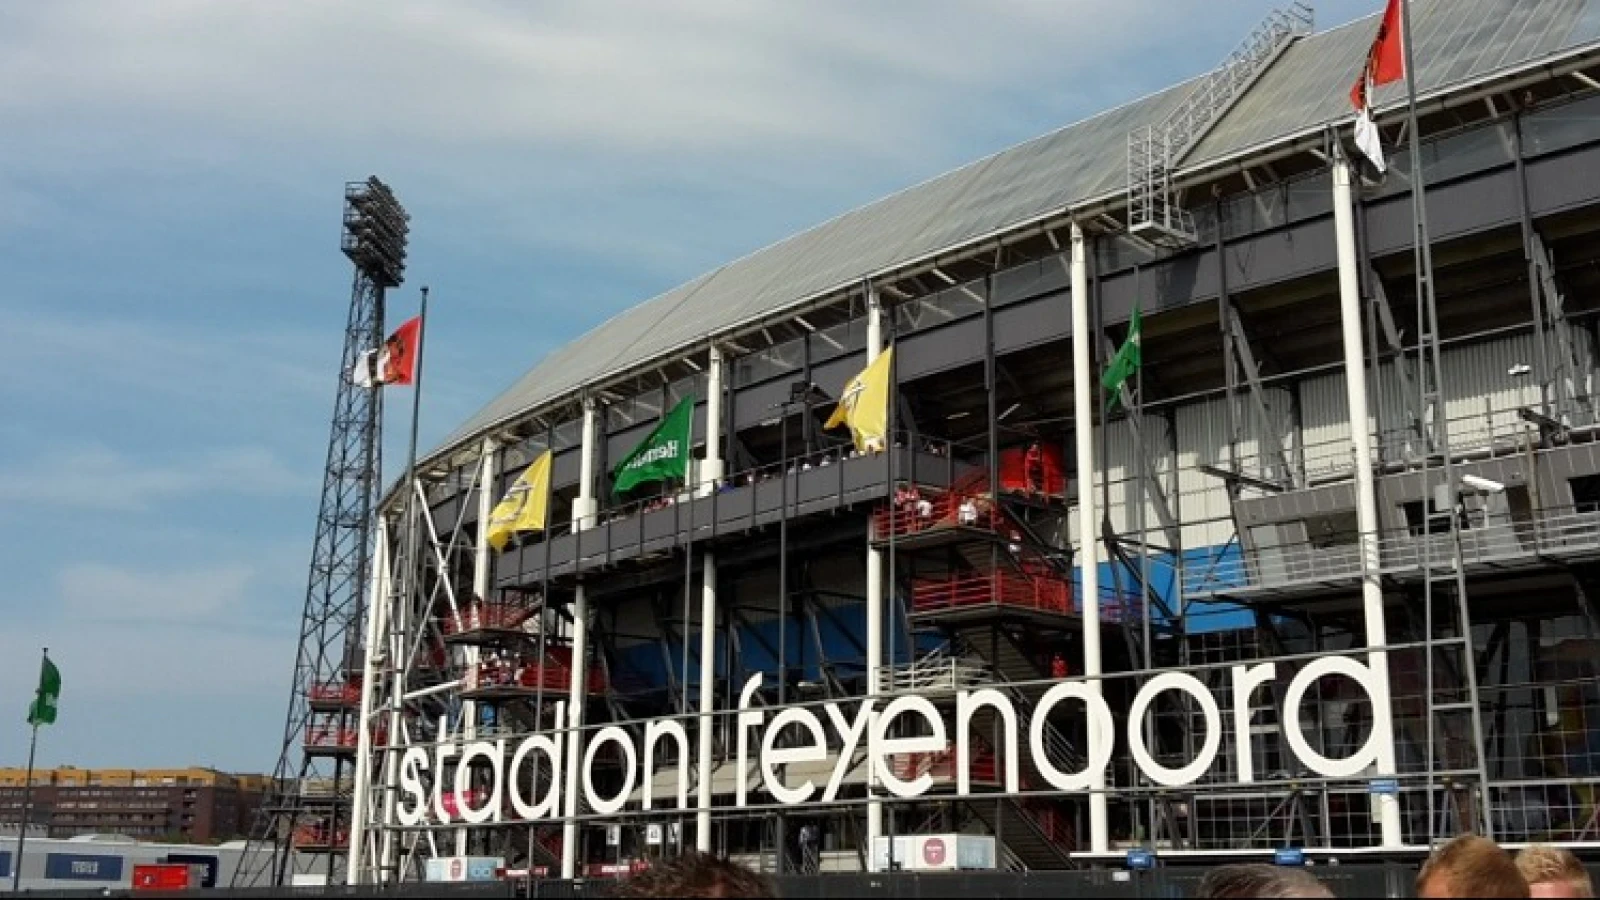 Krabbendam: 'Het kwam Feyenoord niet verkeerd uit'